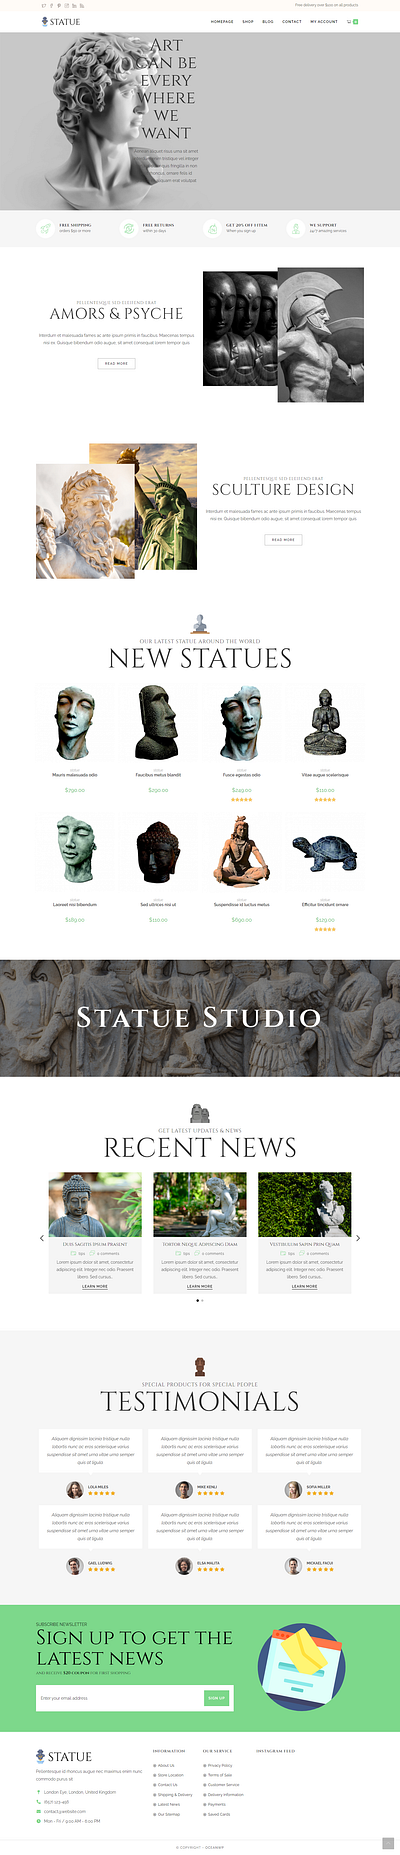 STATUE SCULPTURE ARTIST WEBSITE artist mondol proshanto sculpture statue web design website